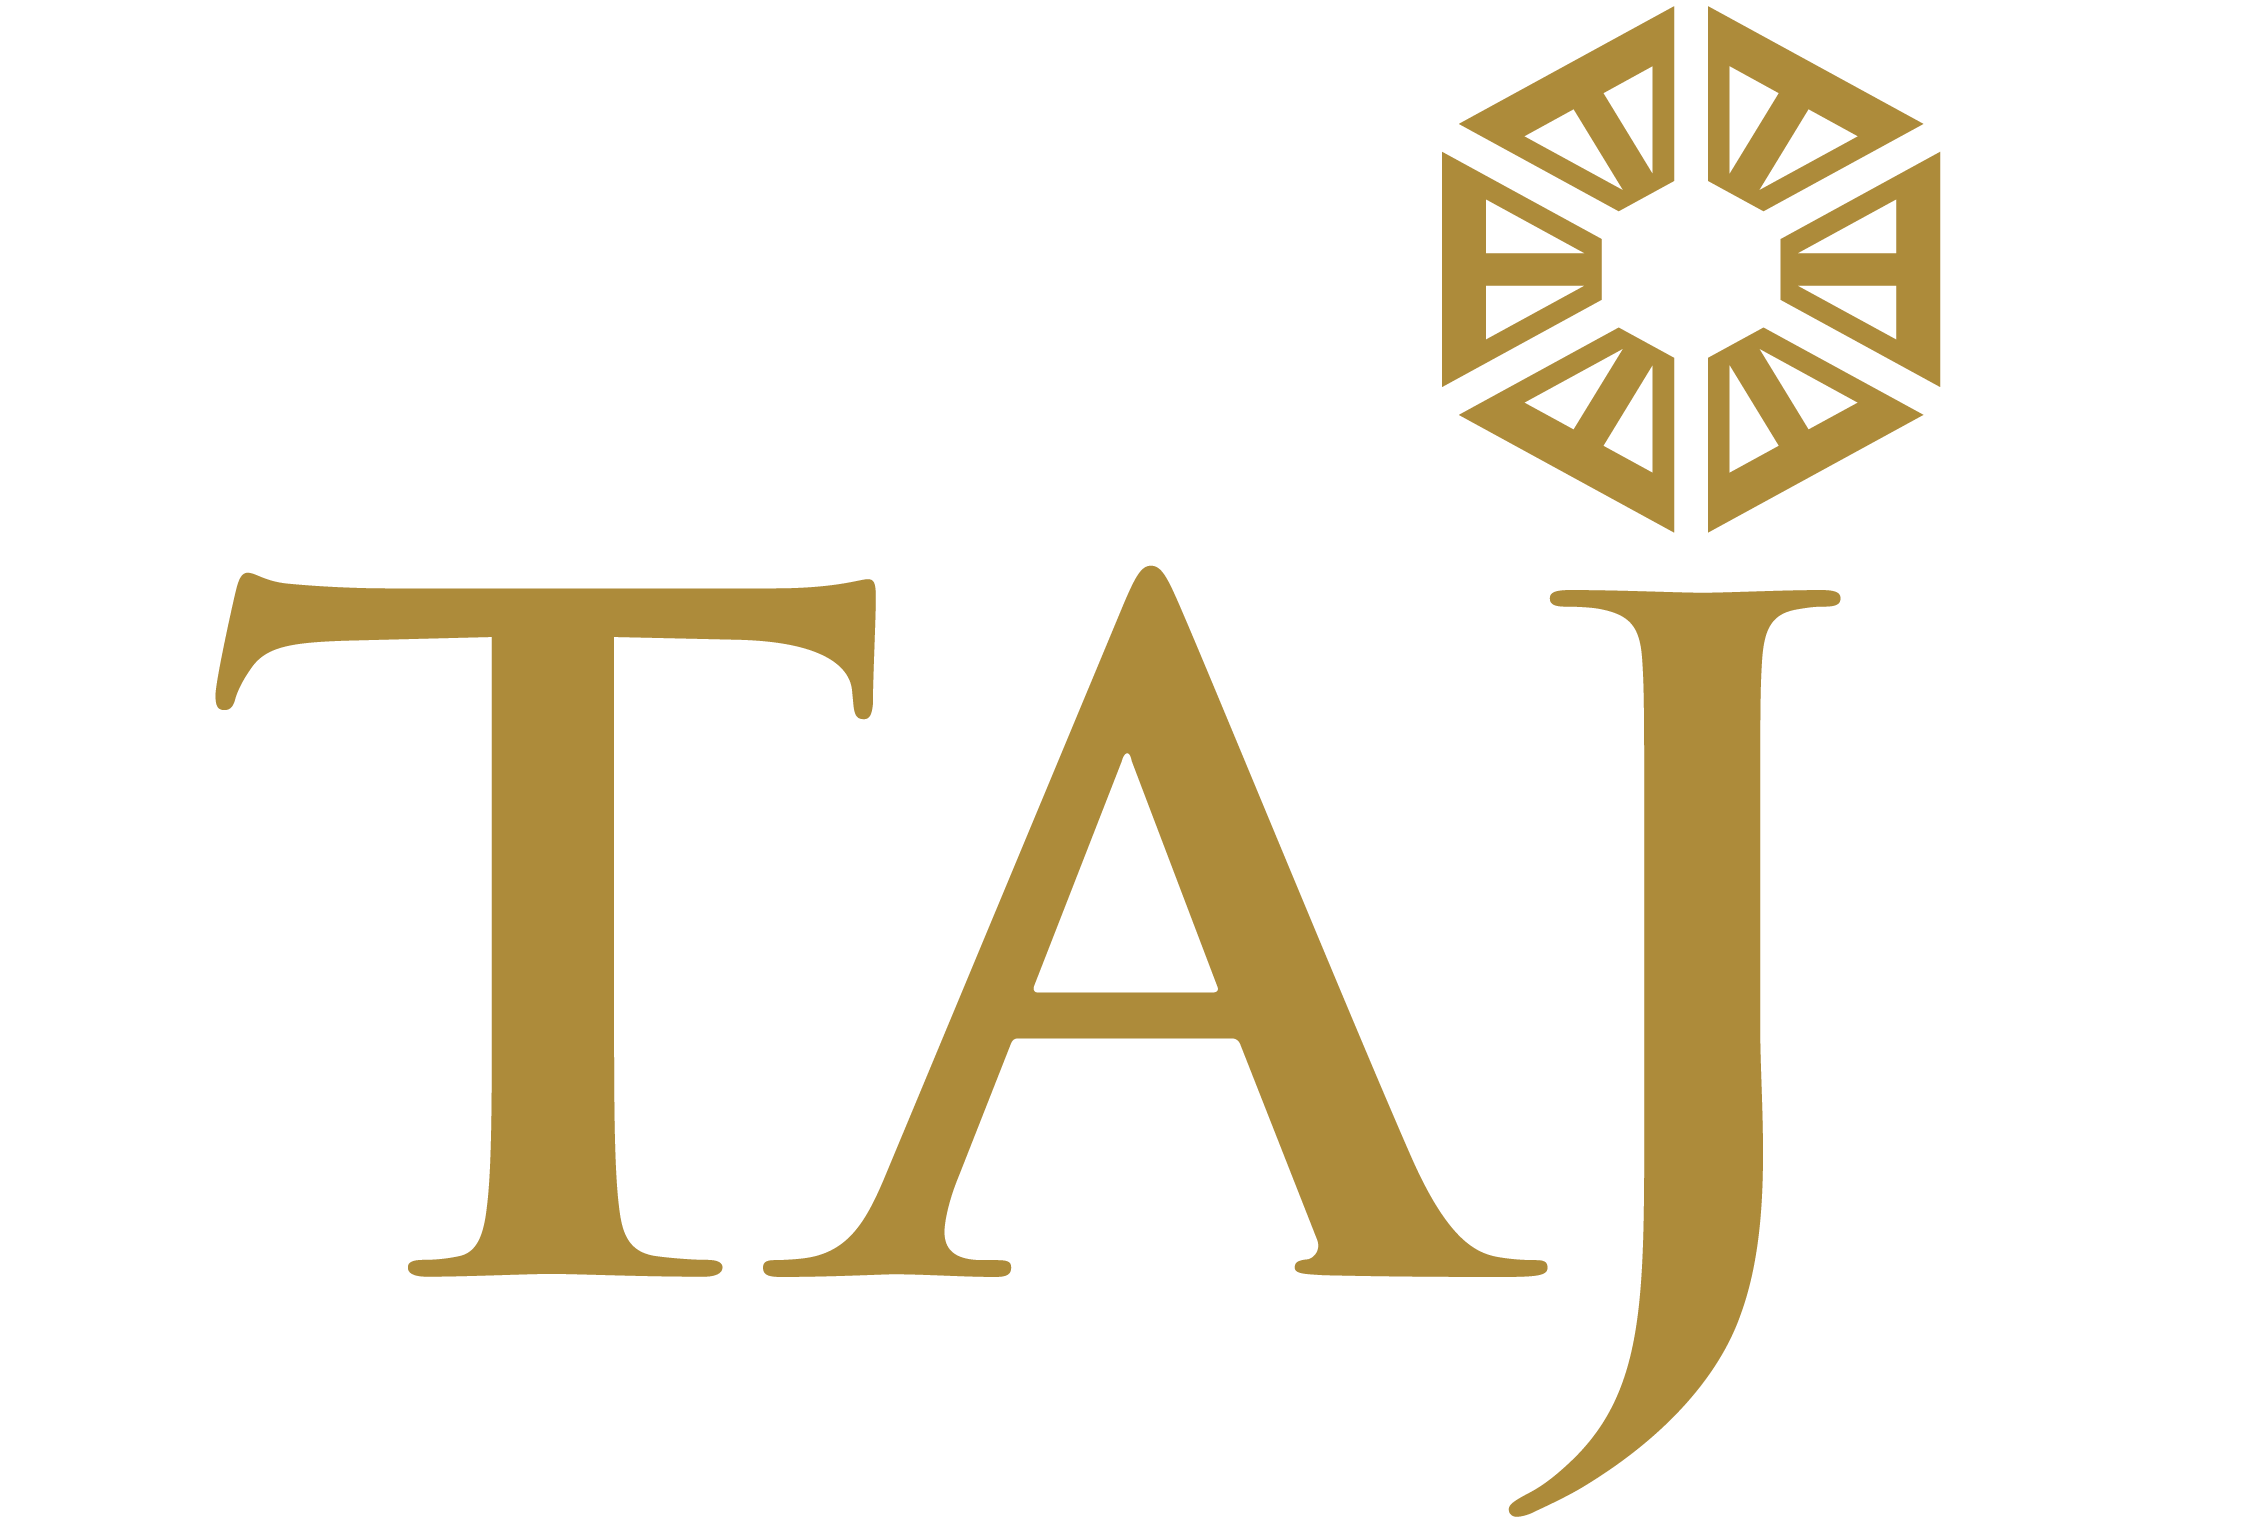 Taj Hotels